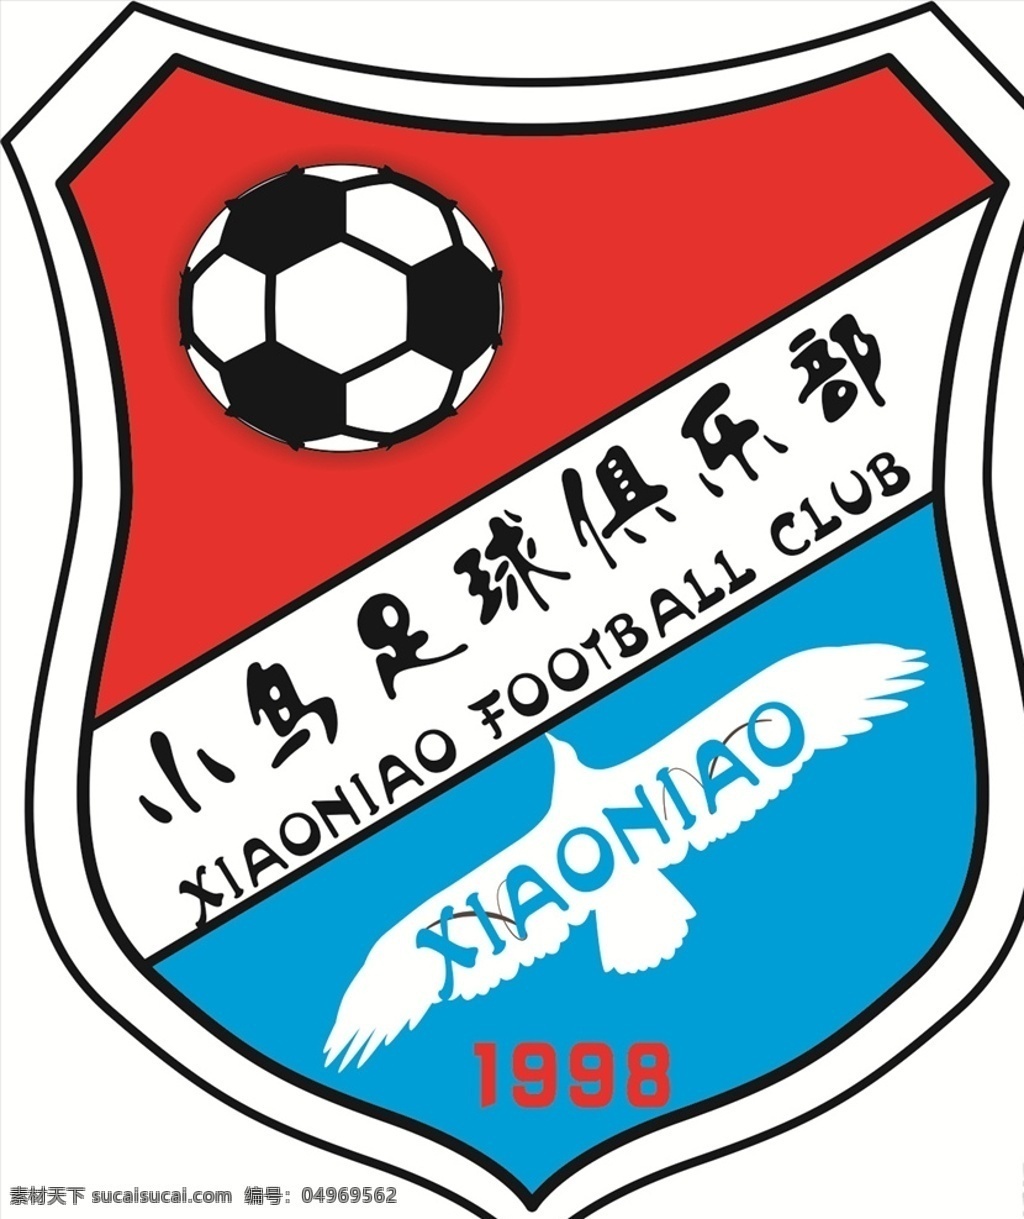 足球队徽 足球 队徽 小鸟 俱乐部 1998 标志图标 其他图标